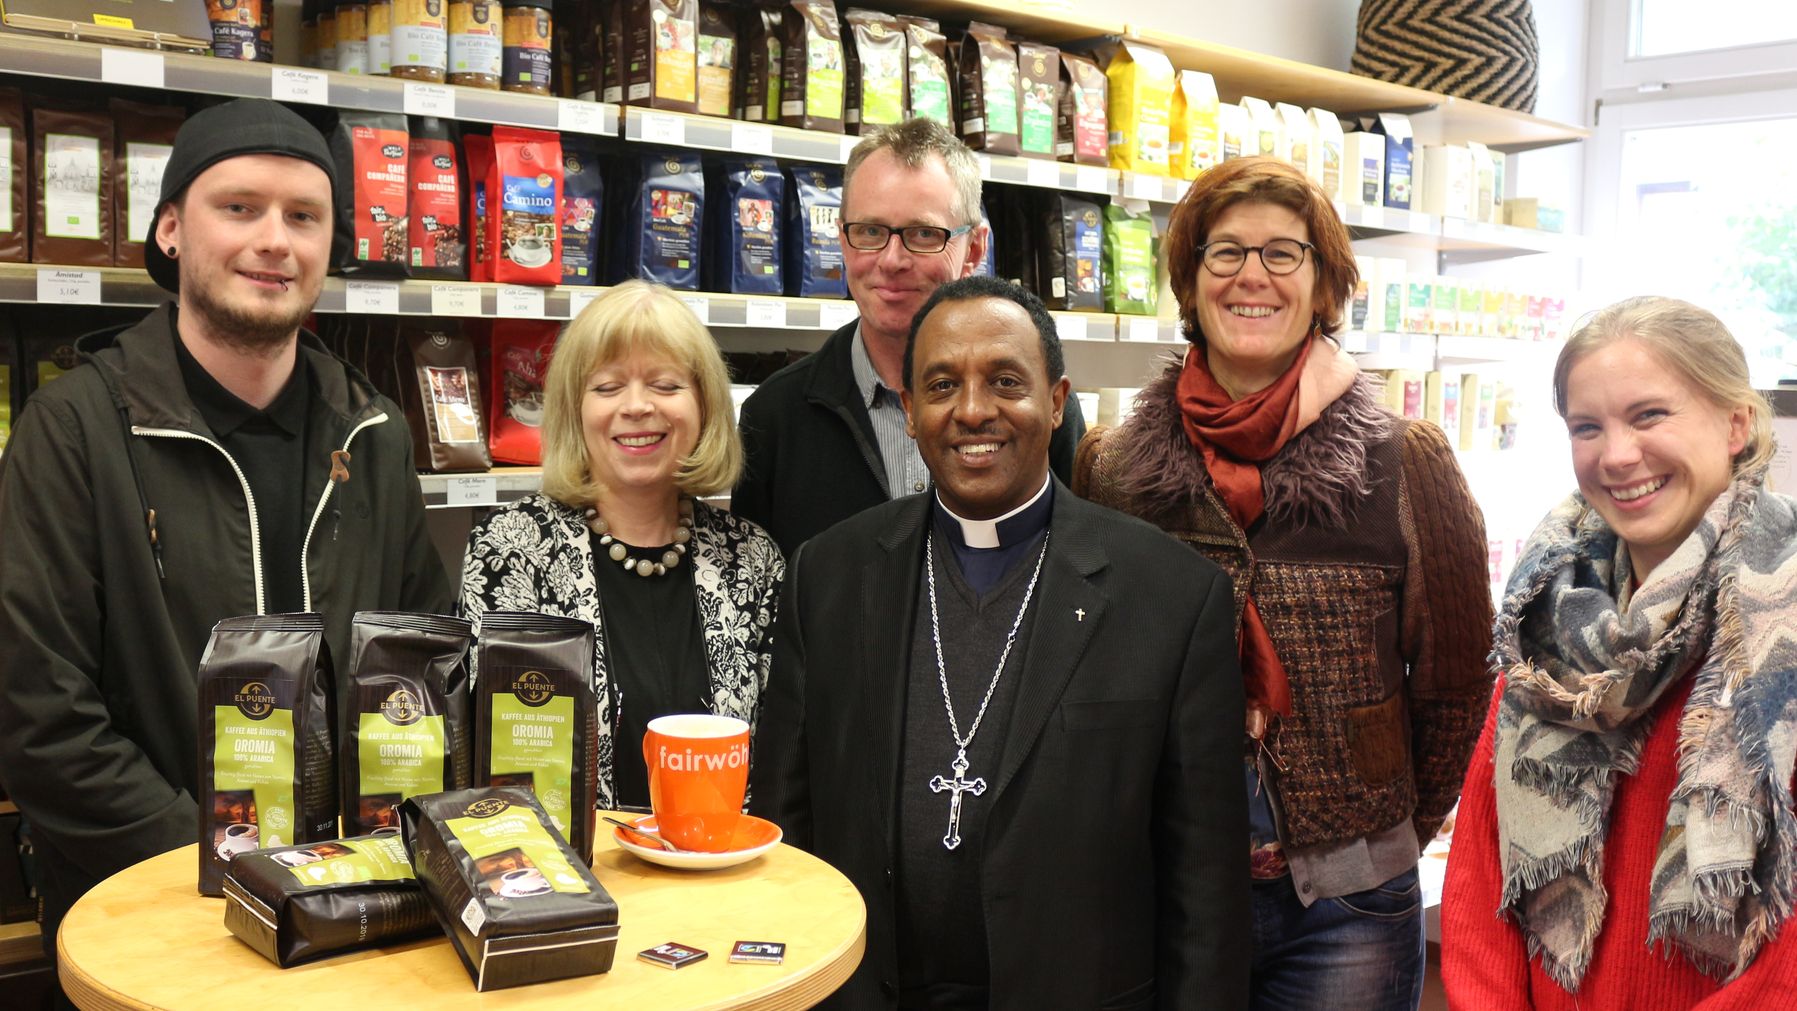 Besuch im Weltladen in Aachen, wo der Bischof aus dem Kaffeeland Äthiopien sich besonders für den fairen Kaffee interessierte. (c) Weltladen Aachen